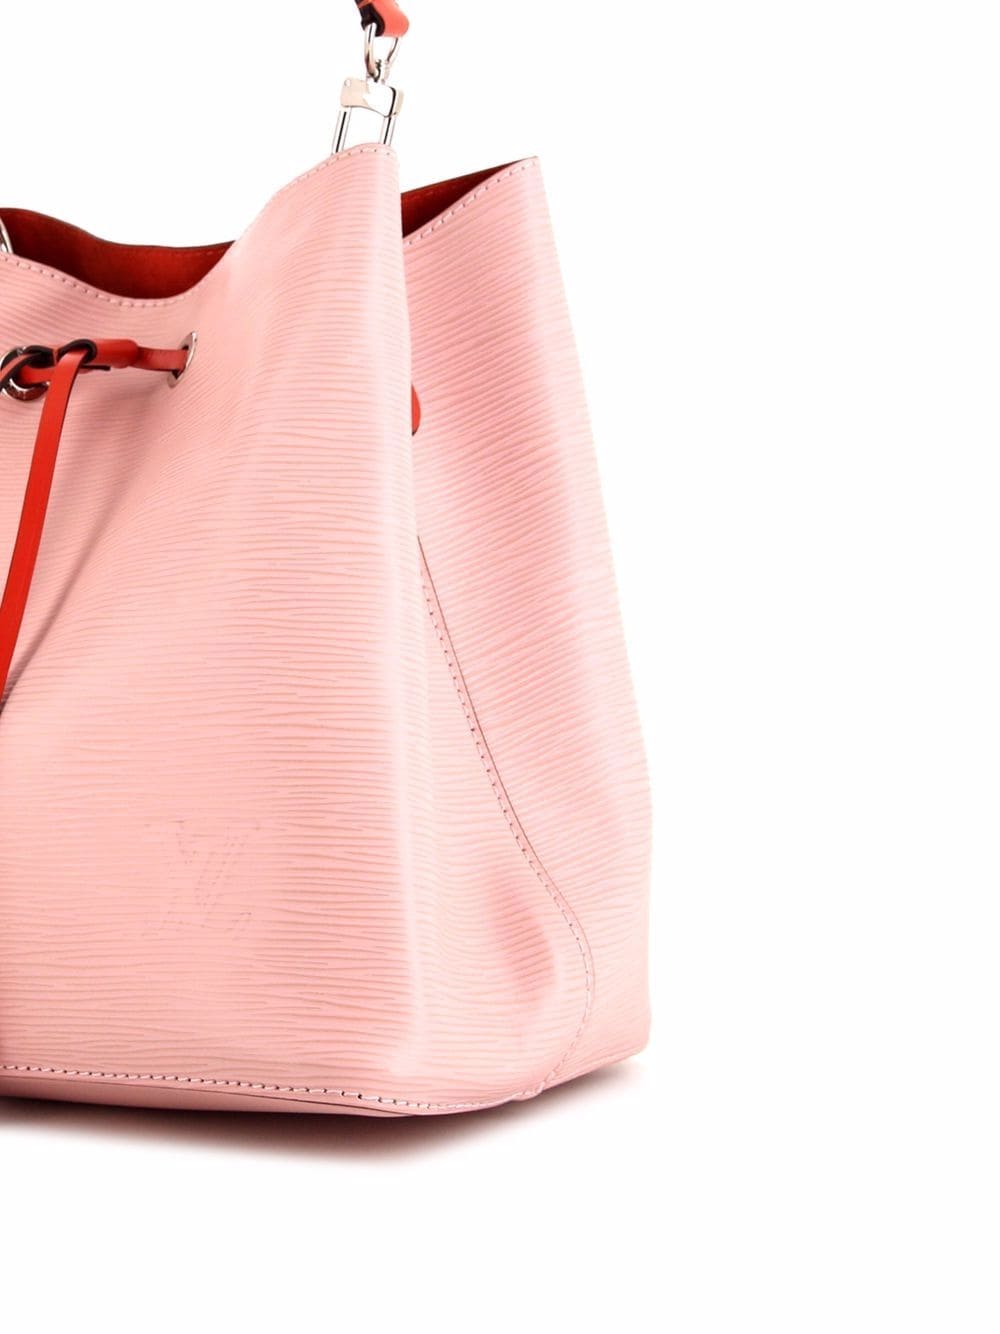 Louis Vuitton Petit Noé Bucket Bag